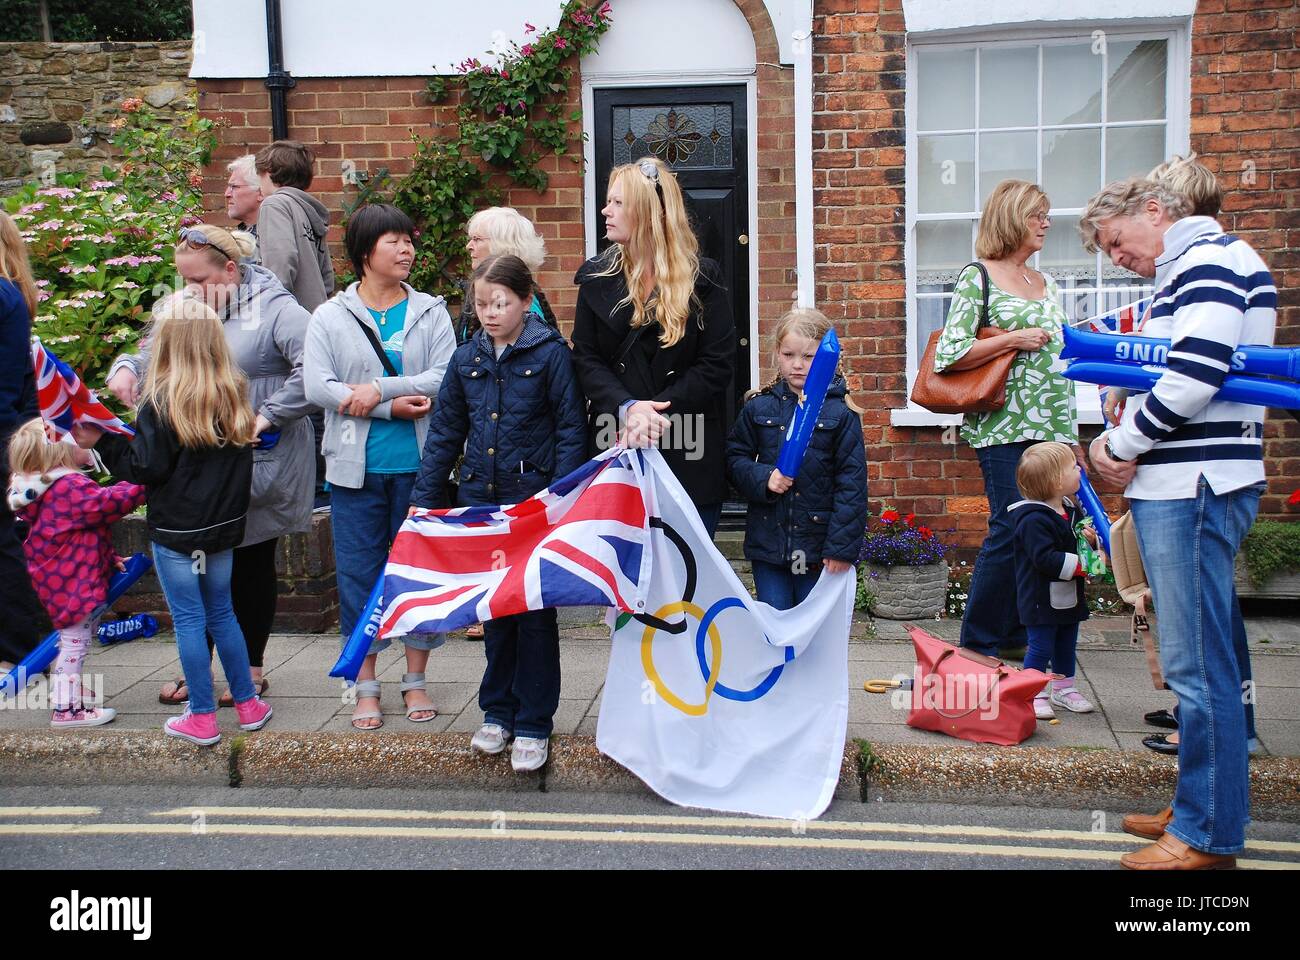 Les gens attendent dans la rue avant qu'un événement du relais de la flamme olympique à Rye dans l'East Sussex, Angleterre le 18 juillet 2012. Banque D'Images